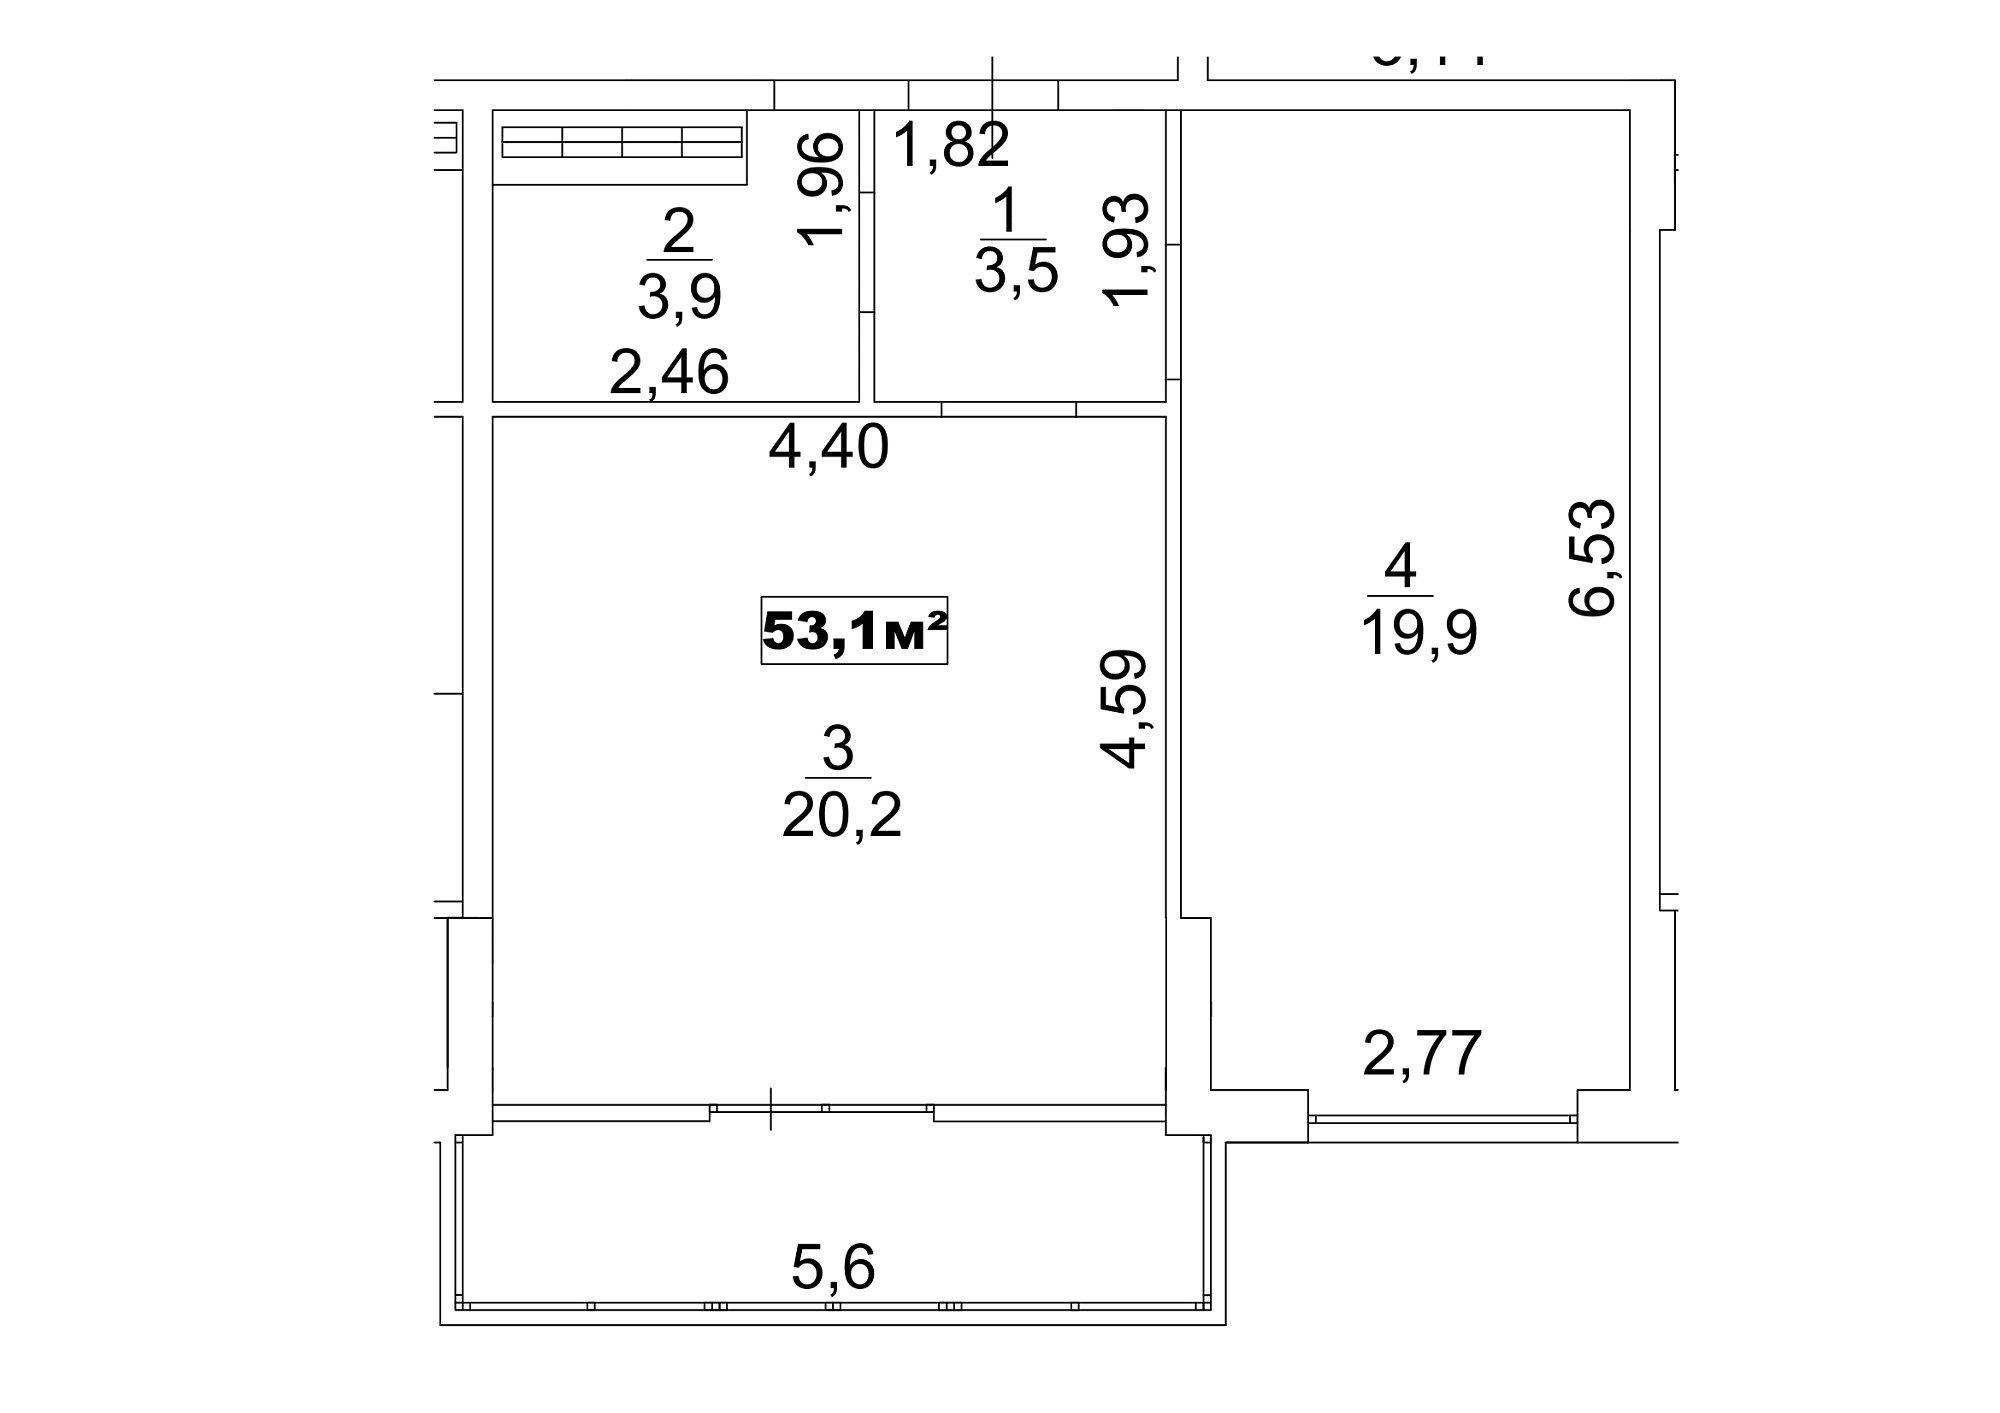 Планировка 1-к квартира площей 53.1м2, AB-13-10/00086.